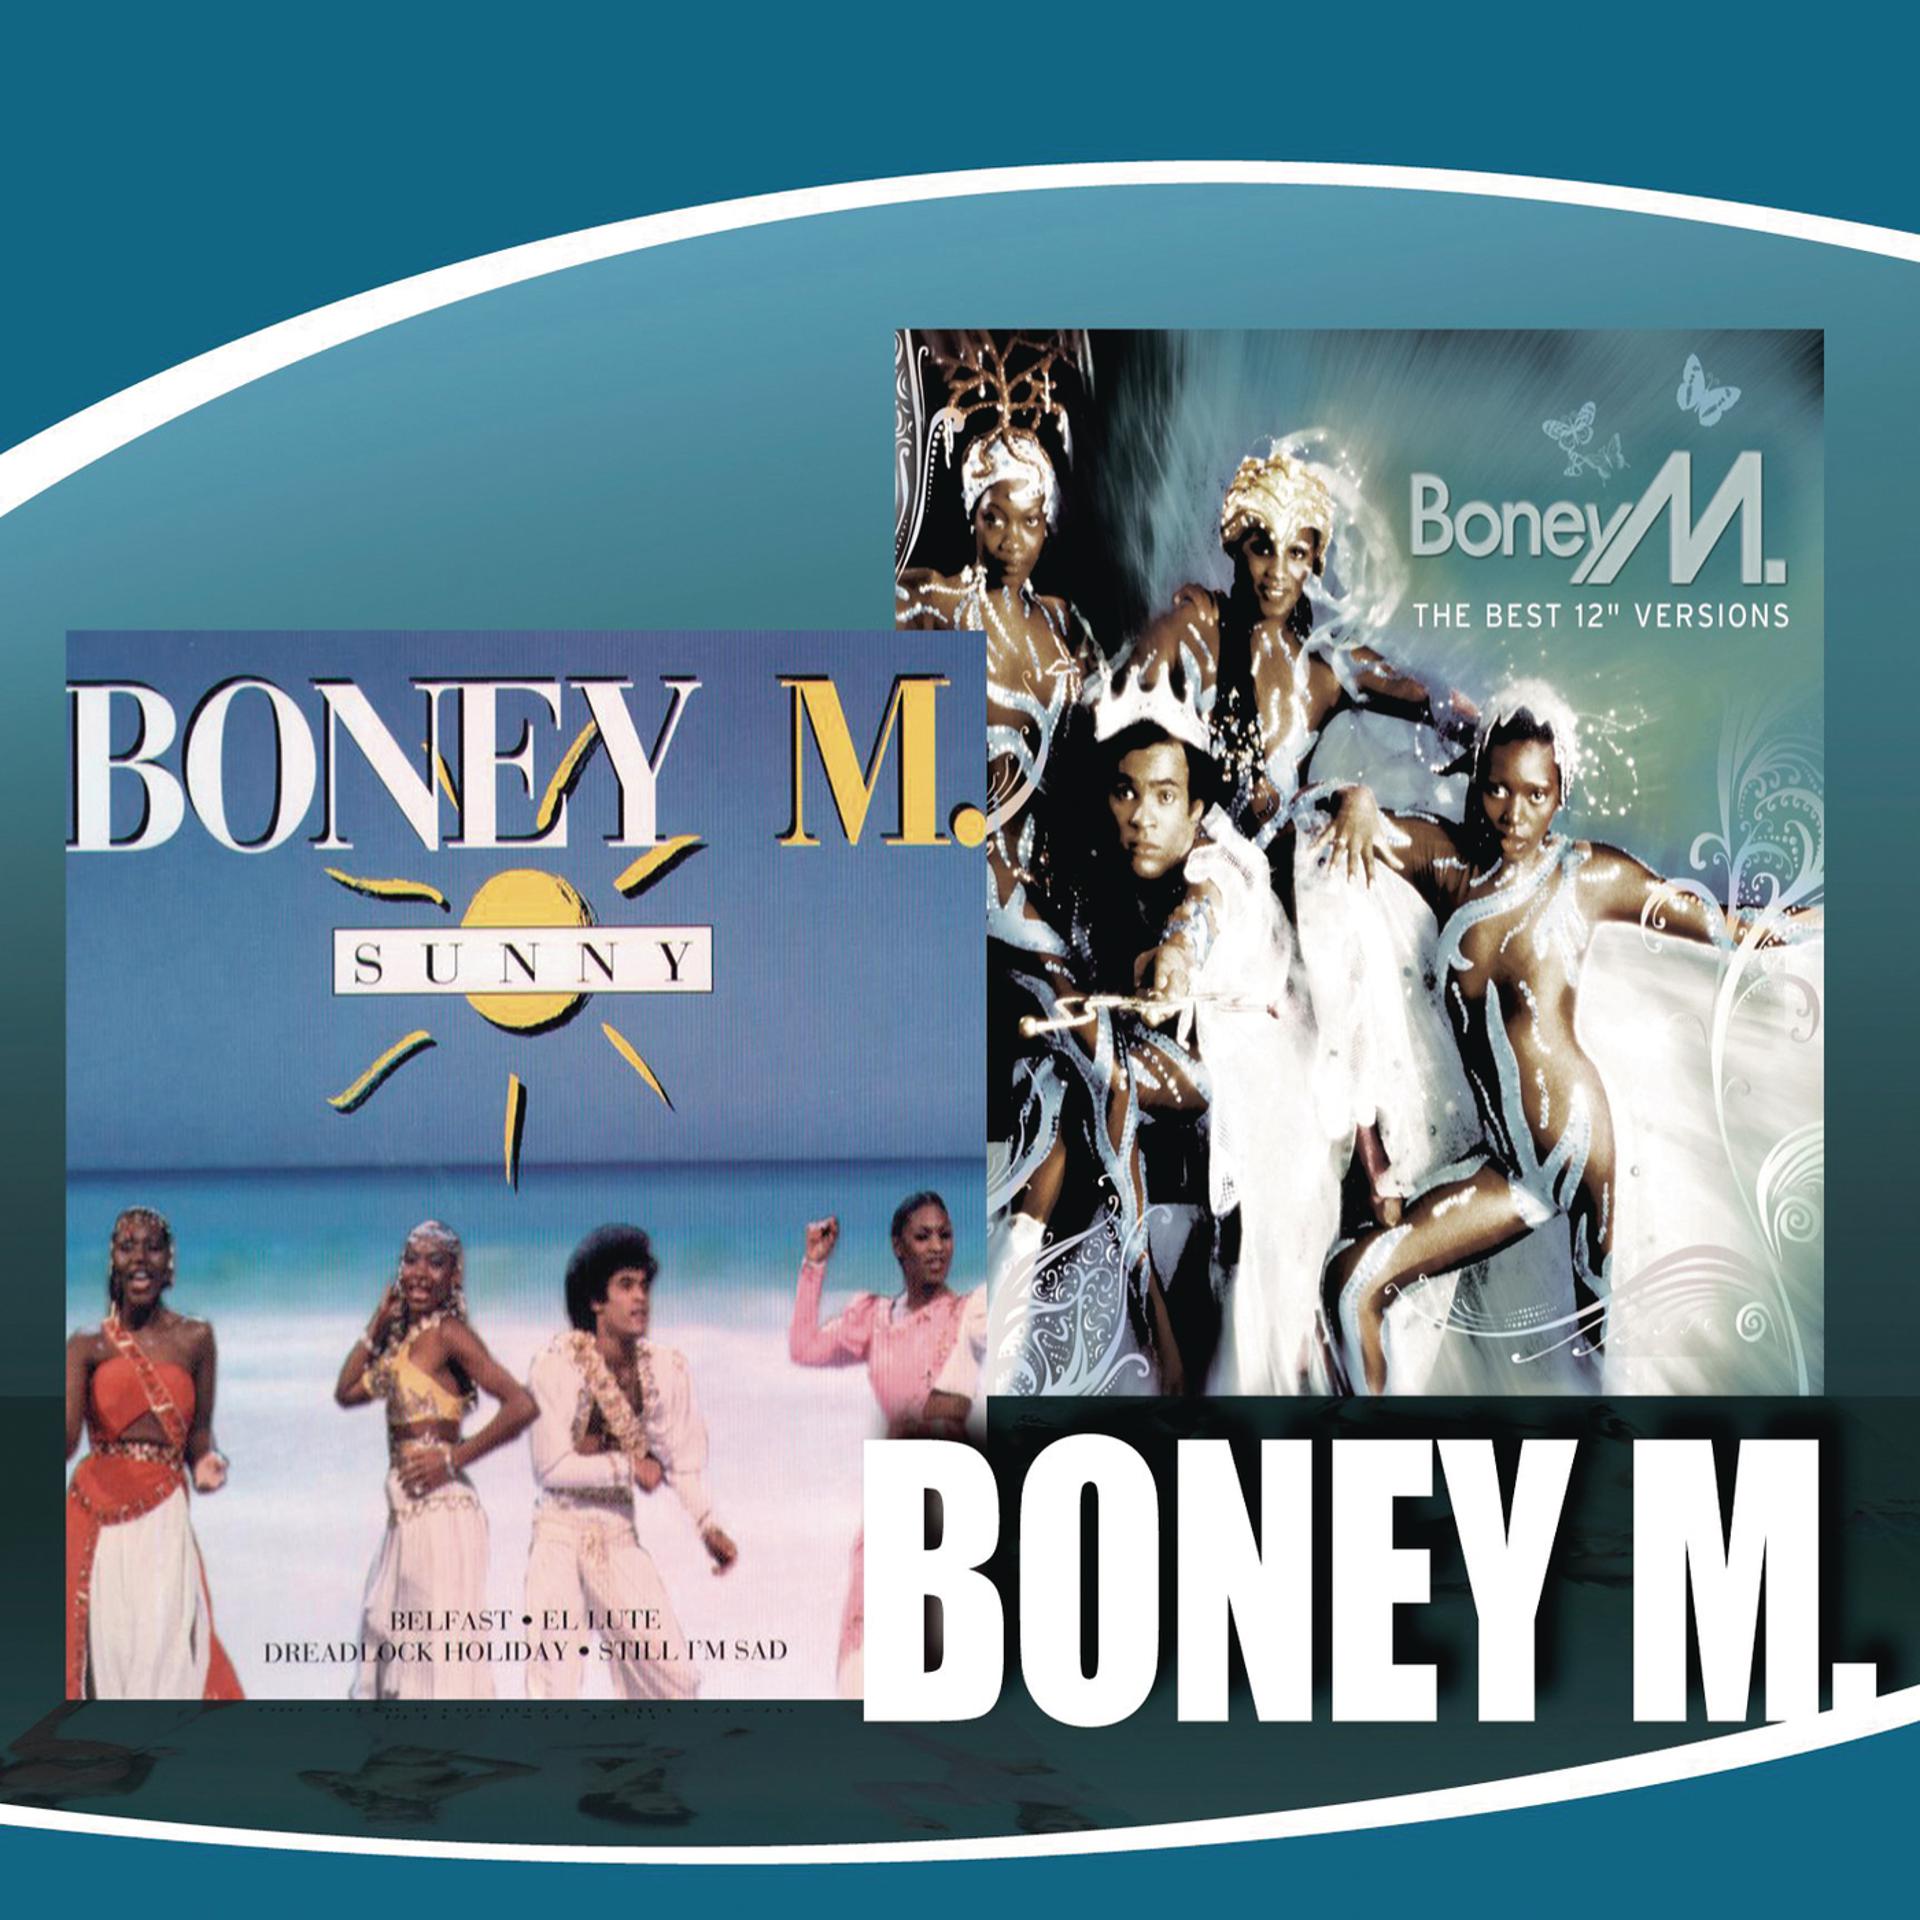 Boney m Sunny обложка. Boney m обложки альбомов. Boney m 2014. Первый состав Boney m.